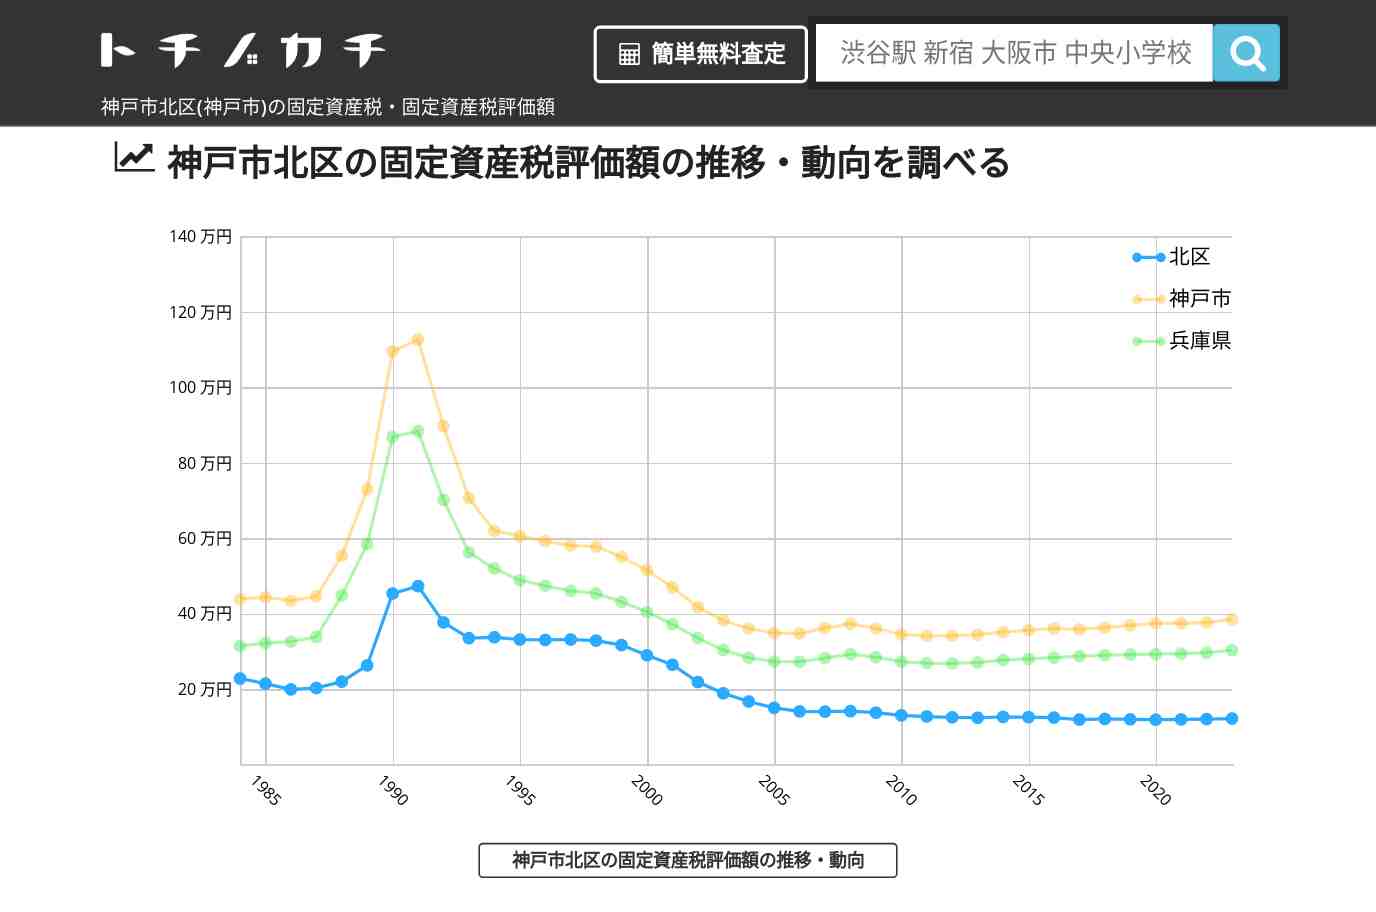 八多小学校(兵庫県 神戸市 北区)周辺の固定資産税・固定資産税評価額 | トチノカチ